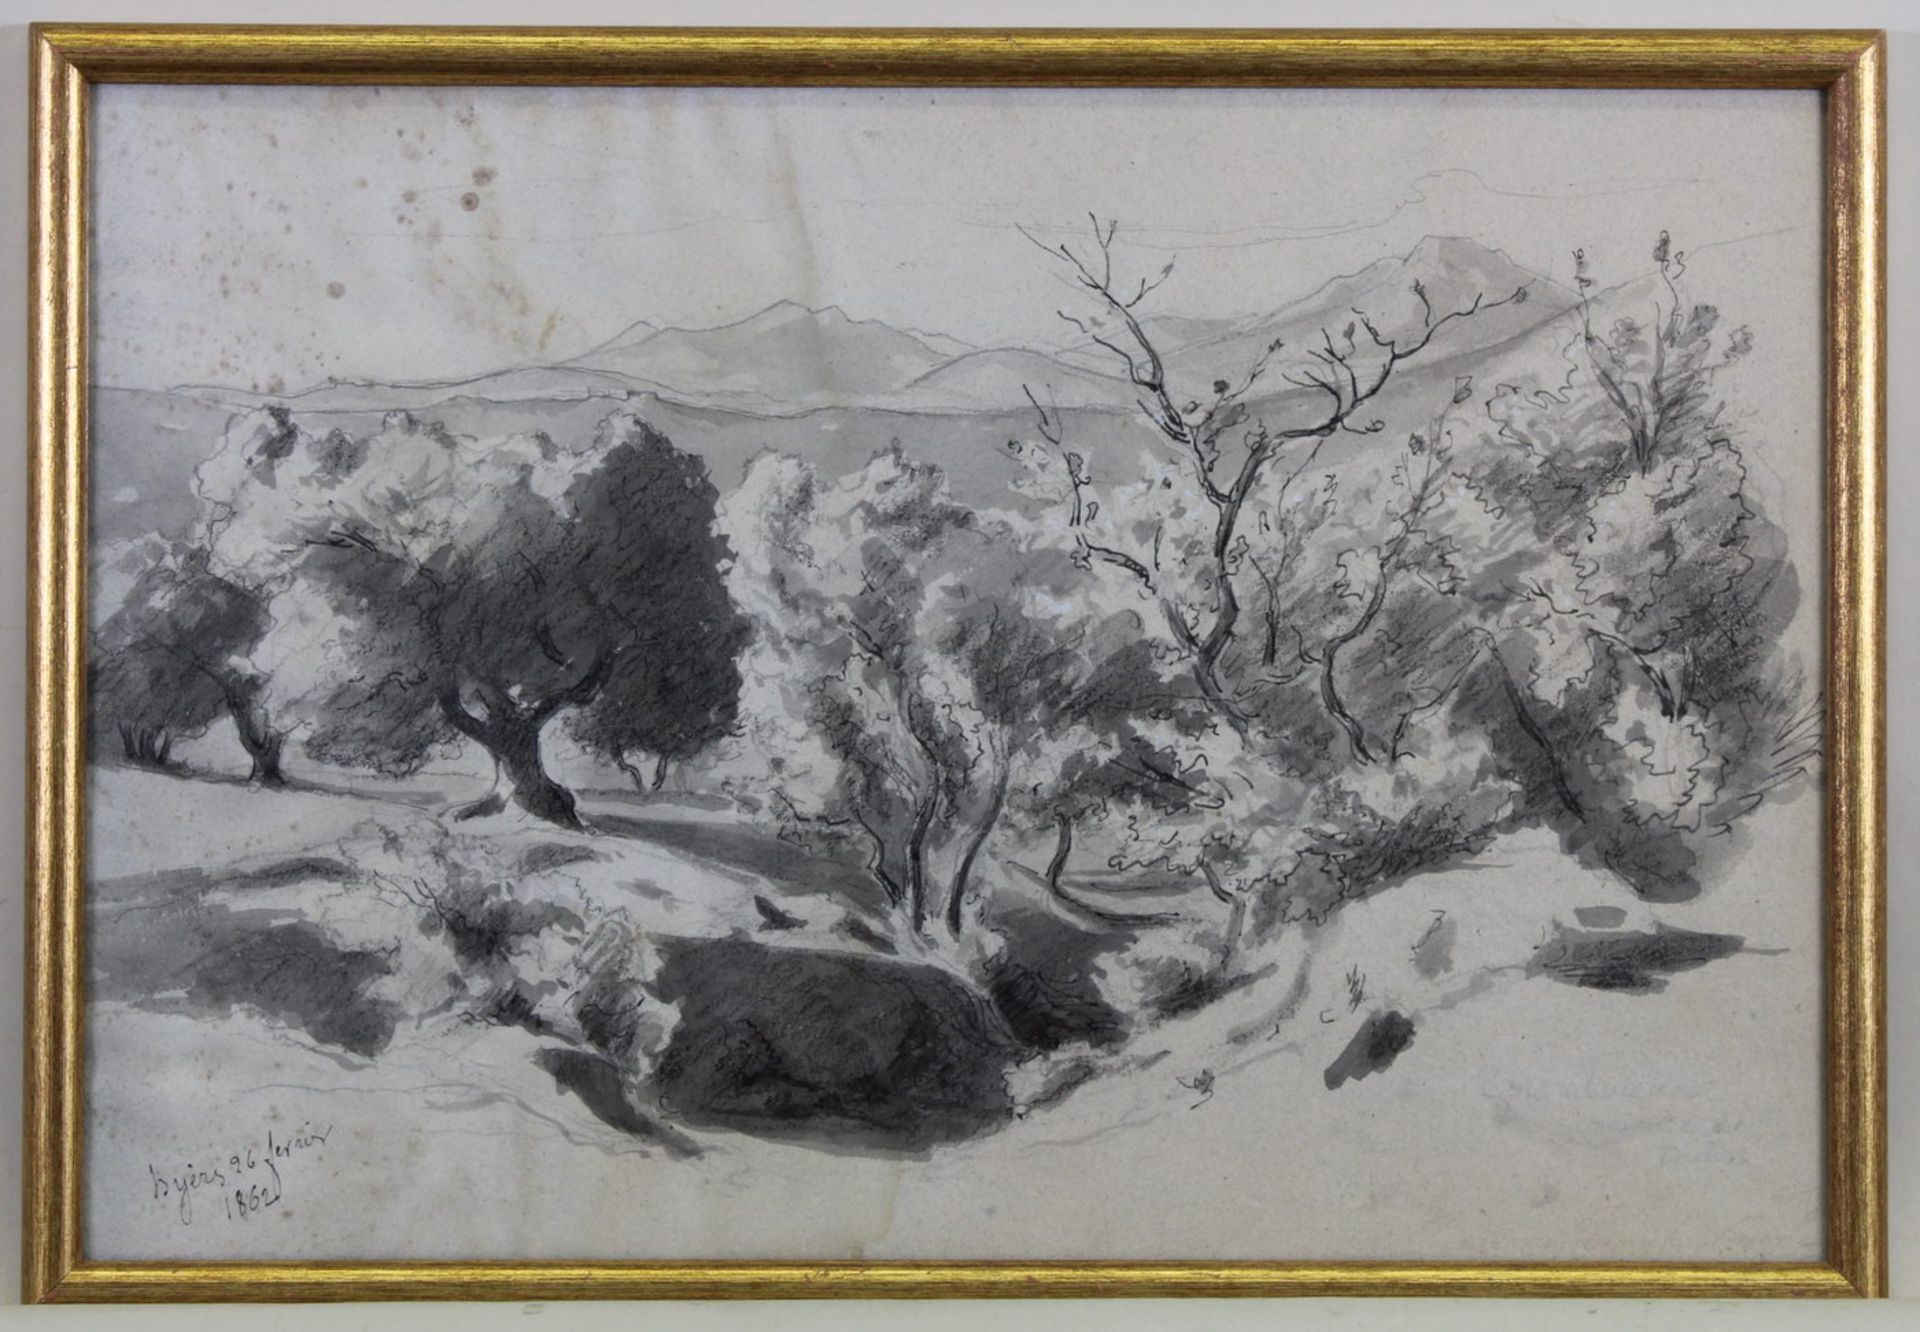 2 Zeichnungen, Mischtechnik, Feder, Kohle, teils laviert, 1x ortsbezeichnet Hyèrs 96 fevrier 1862, - Bild 2 aus 5